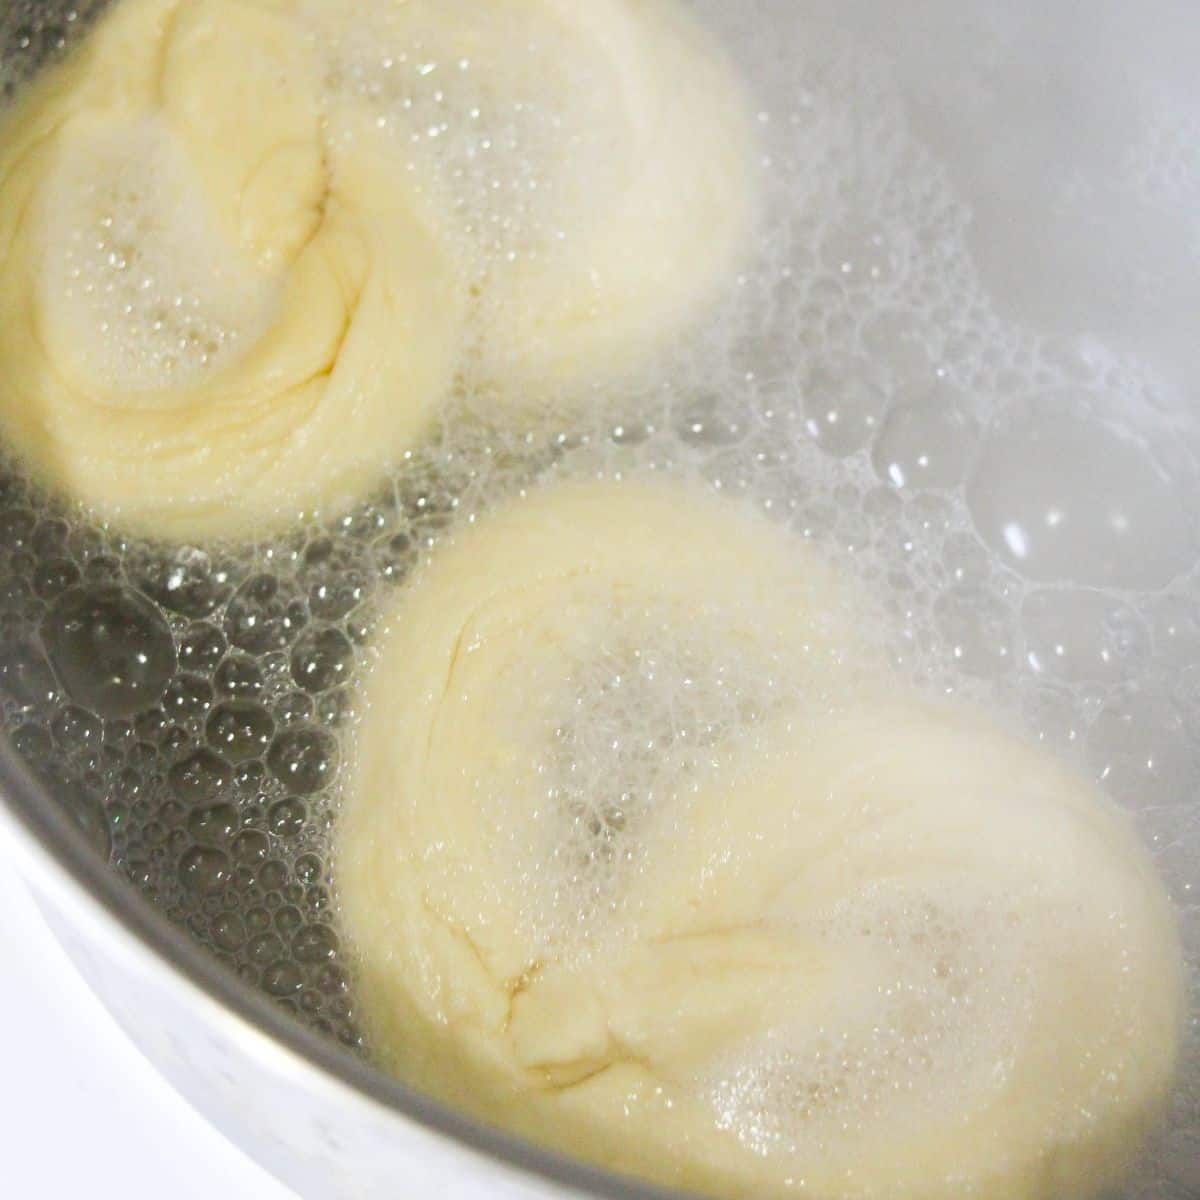 Pretzel dough in boiling water. 